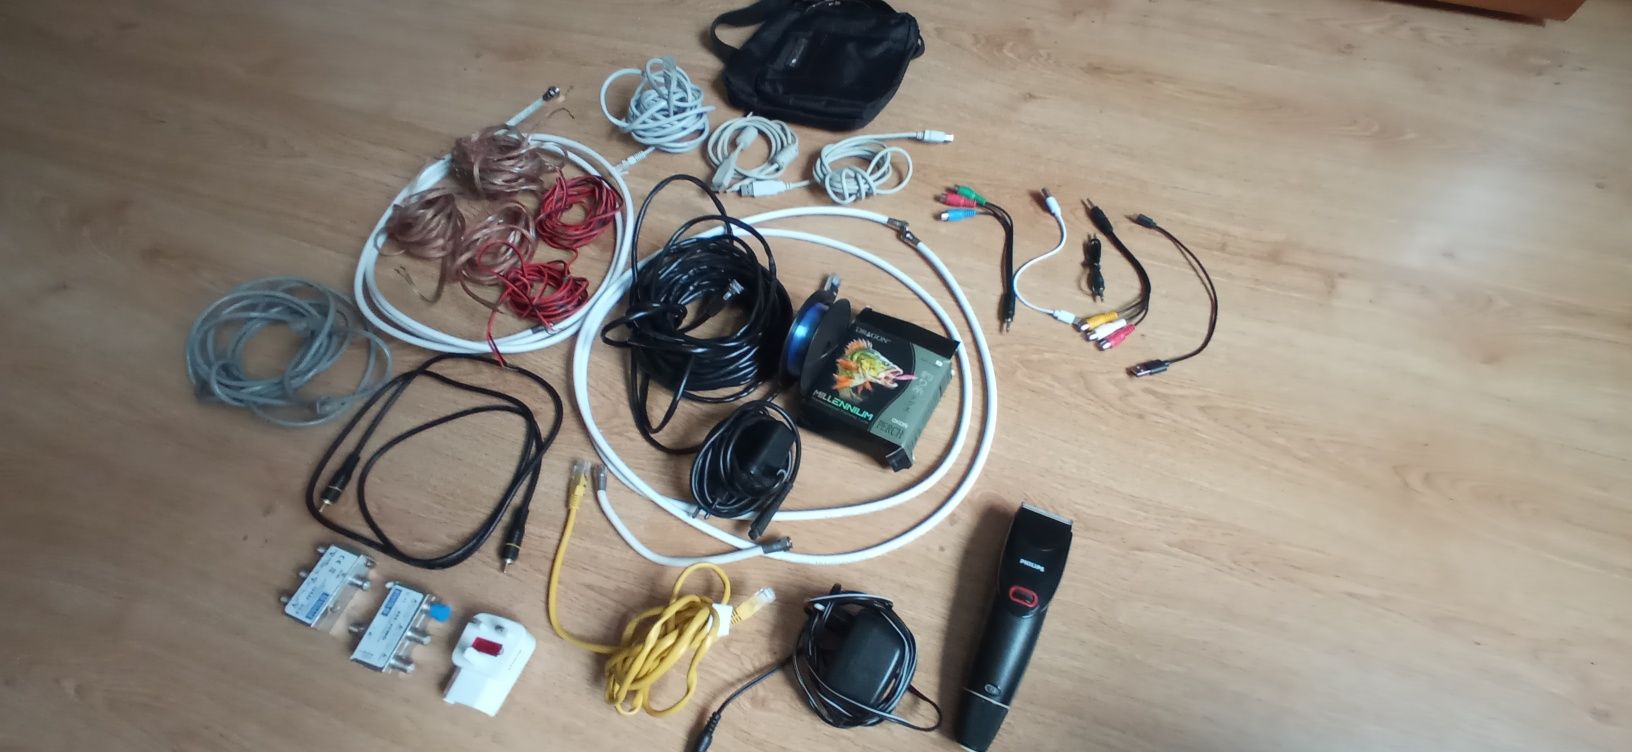 Kable różne głośnikowe  do internetu maszynka Philips saszetka Versoli